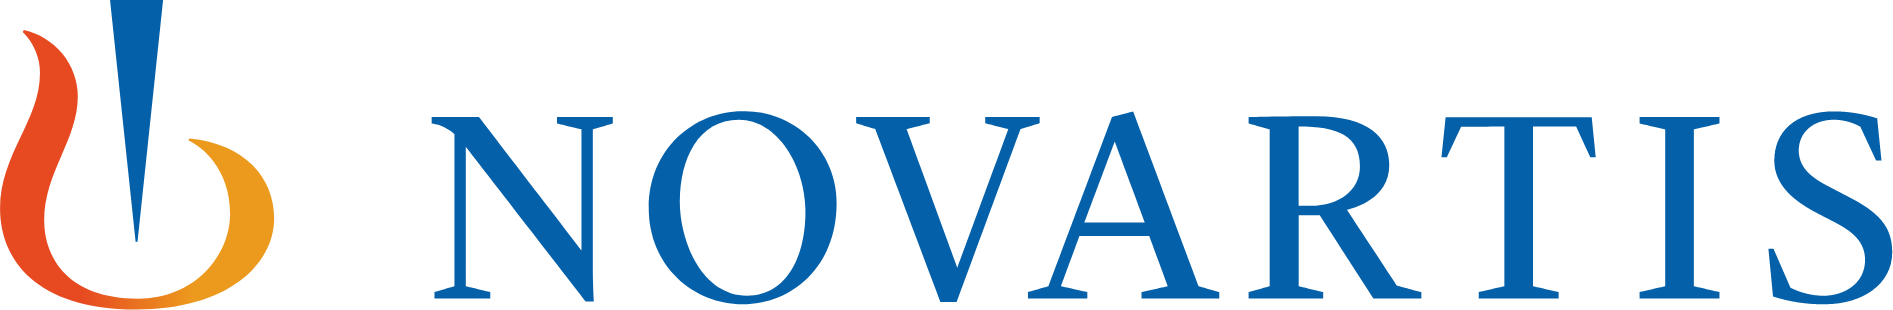 Novartis logo large (transparent PNG)